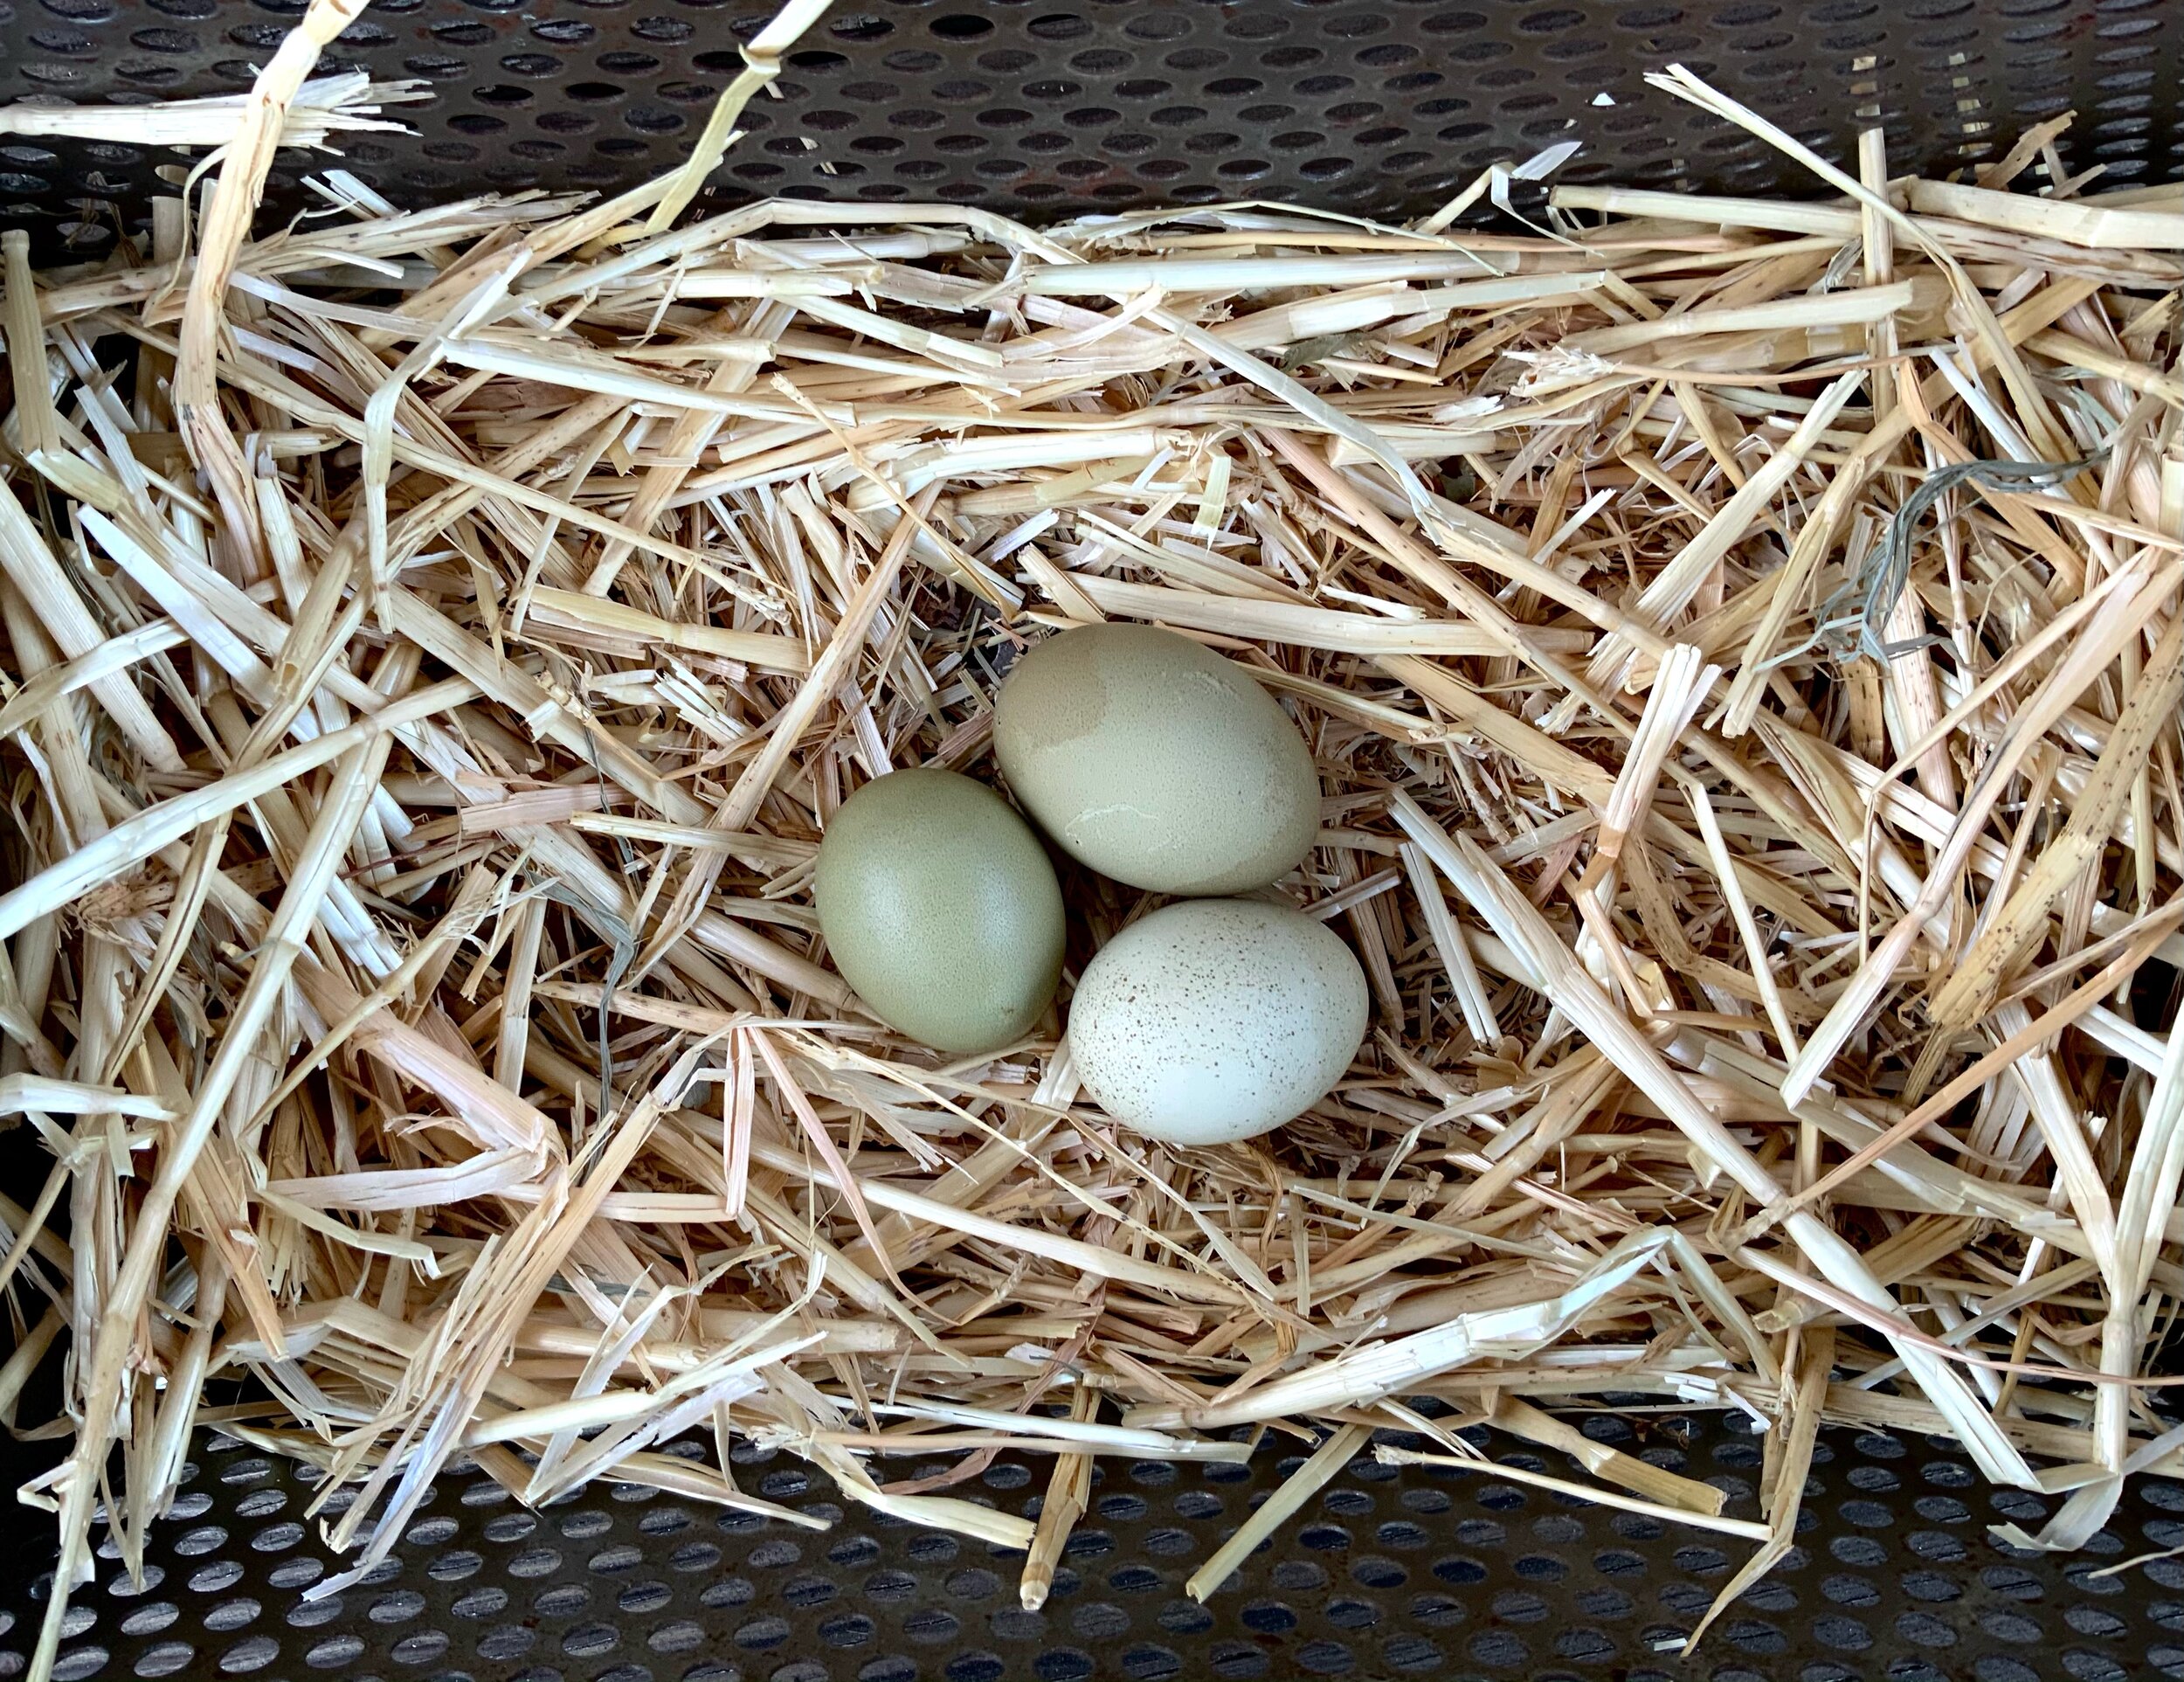 NPIP 6 F3-f4 Olive Egger Hatching Eggs! 